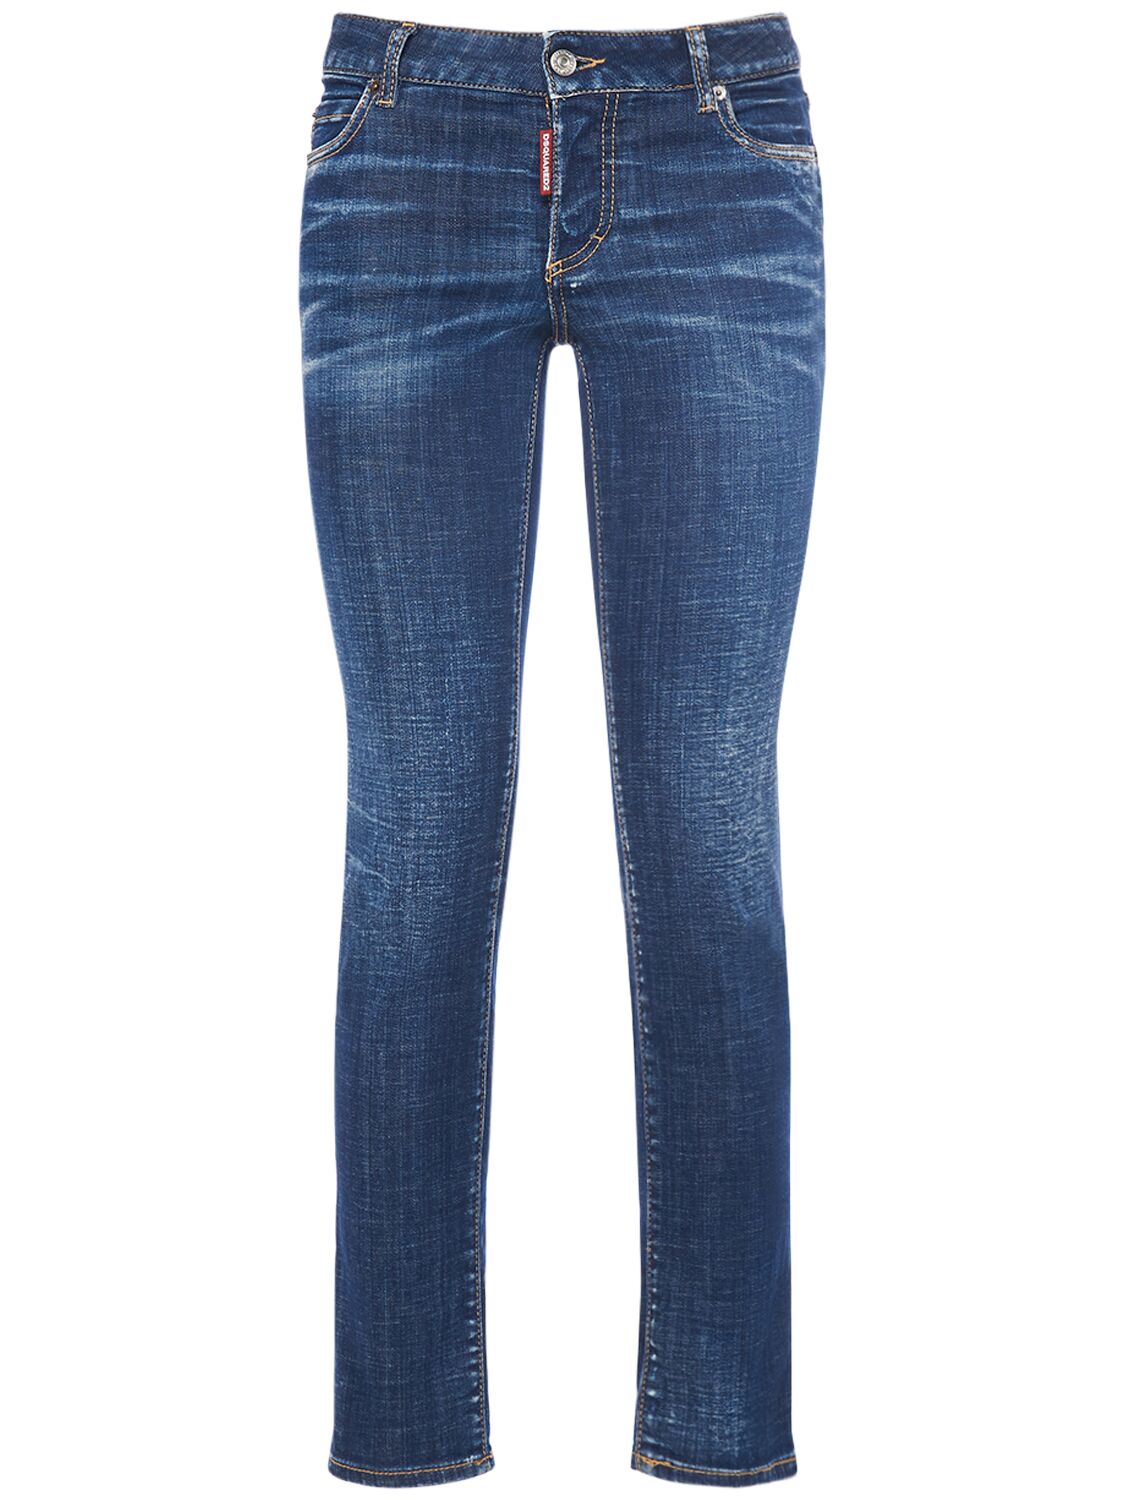 Mujer Jeans Skinny De Denim Con Cintura Baja 34 - DSQUARED2 - Modalova